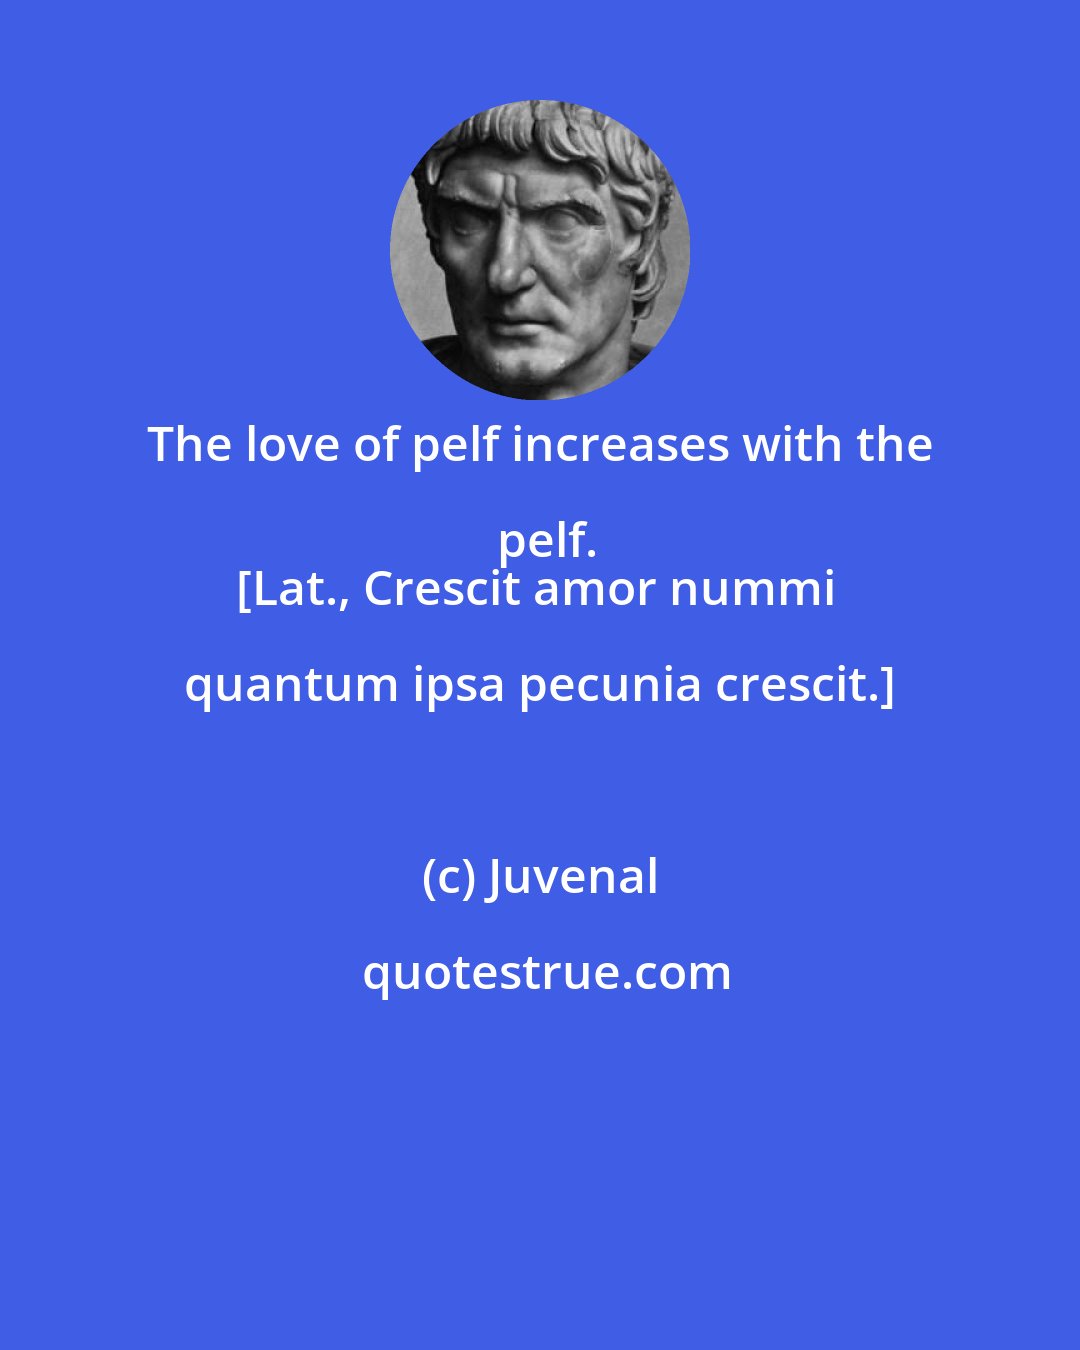 Juvenal: The love of pelf increases with the pelf.
[Lat., Crescit amor nummi quantum ipsa pecunia crescit.]